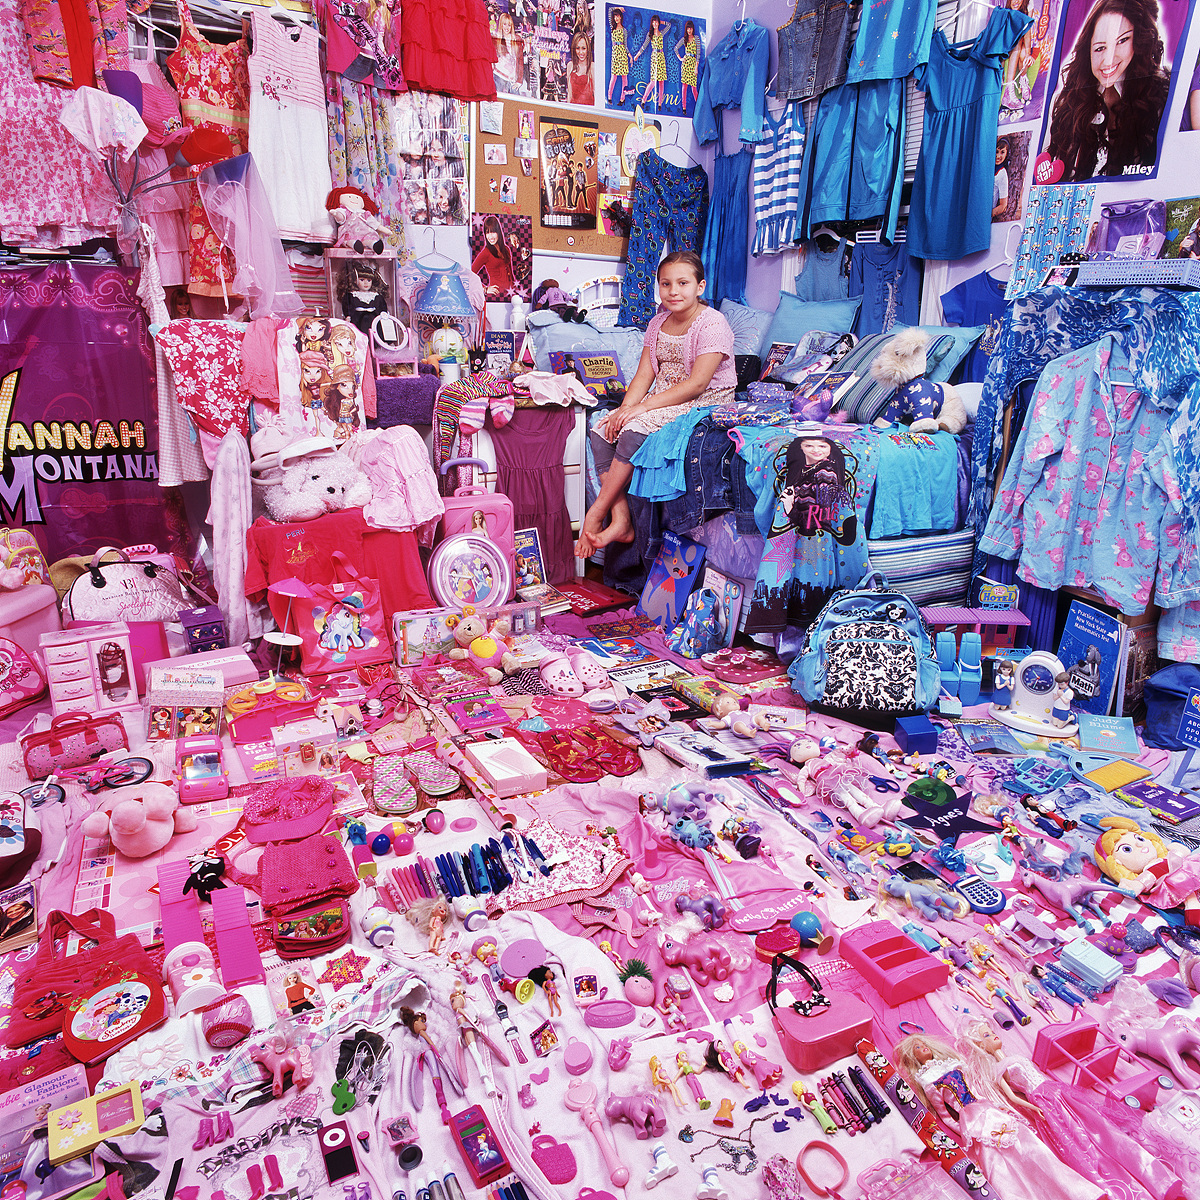 핑크 프로젝트 I-아그네스와 아그네스의 핑크 _파란색 물건들, 뉴욕, 미국, 라이트젯 프린트, 2009.jpg